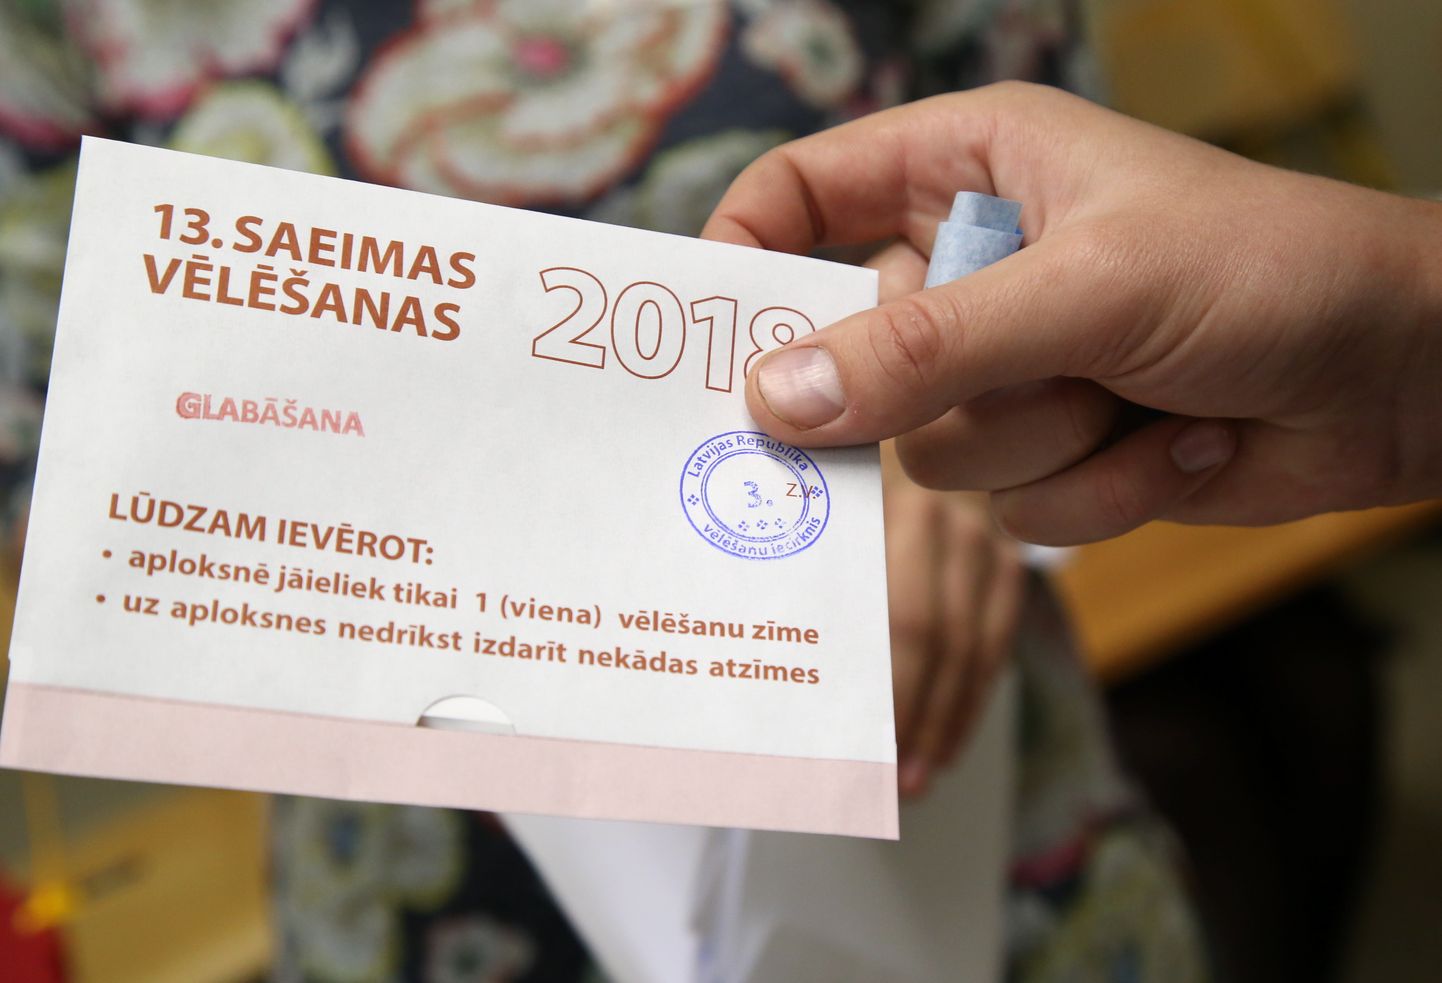 13.Saeimas vēlēšanu 3. vēlēšanu iecirknis, kurā līdz piektdienai iespējams nodot balsi glabāšanā.